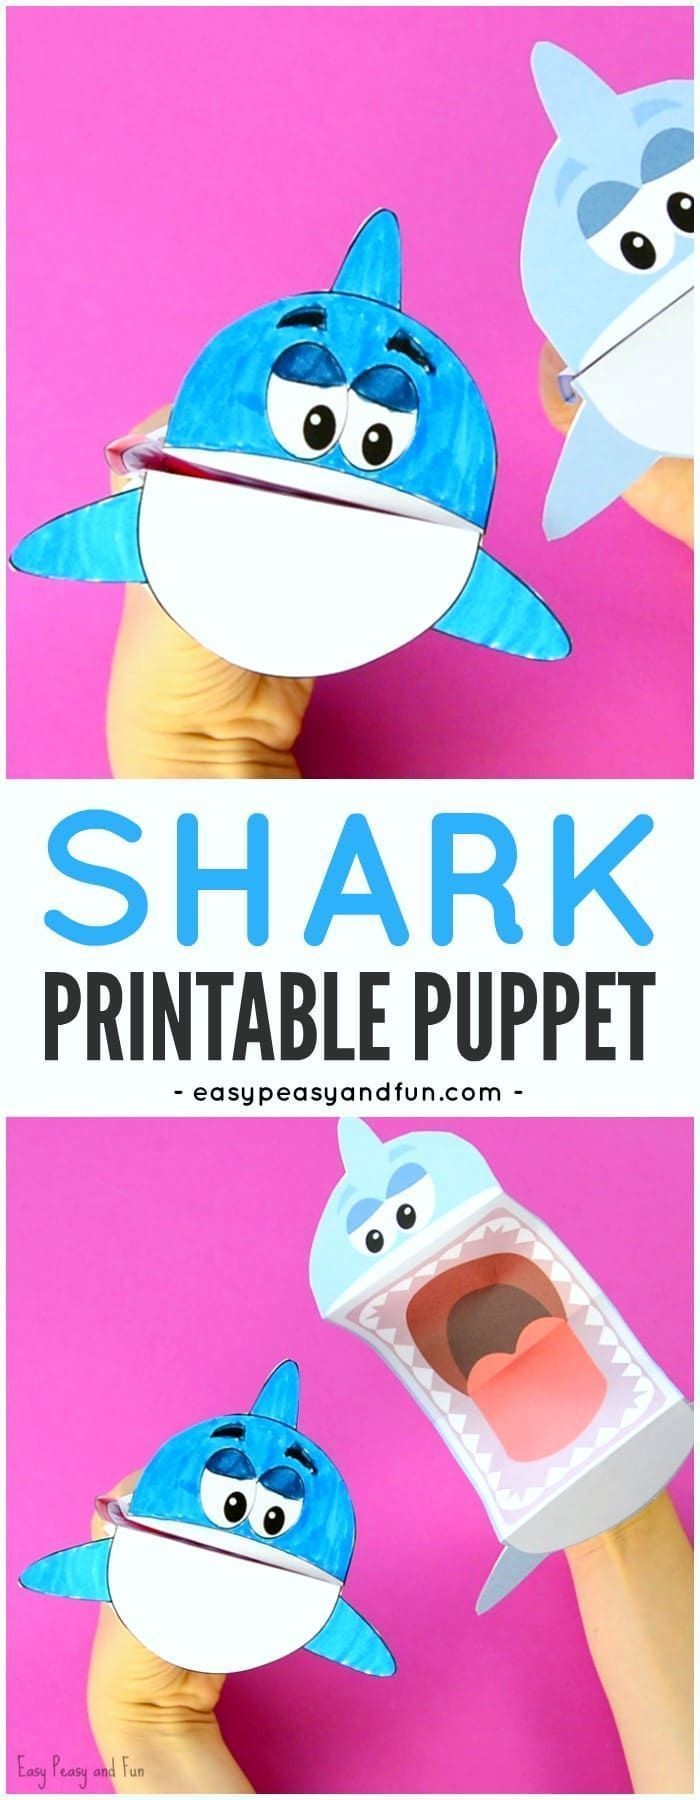 Papercraft Shark Printable Shark Puppet Art Kids Diys Pinterest